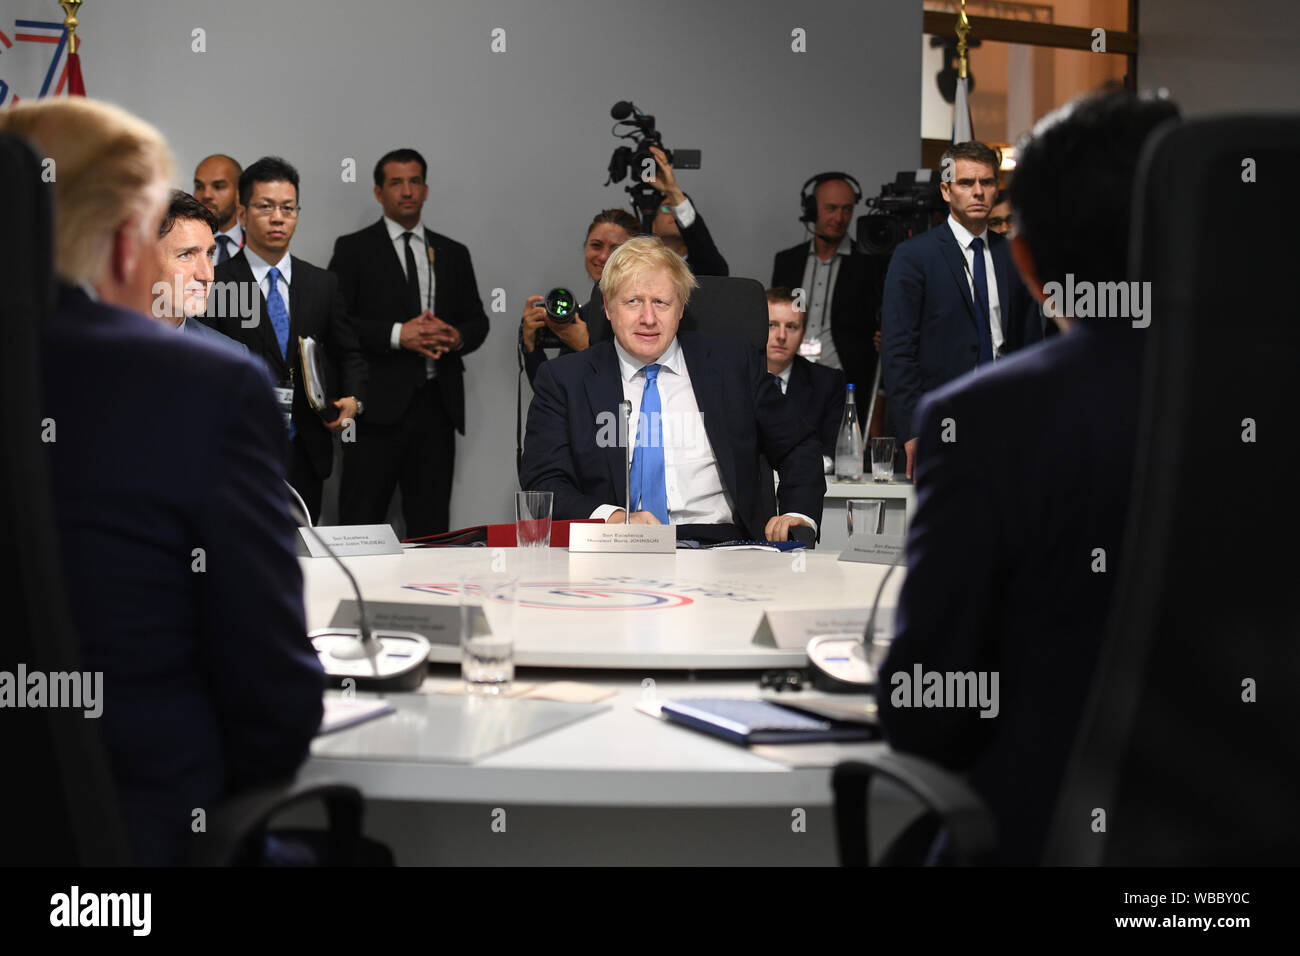 Il primo ministro Boris Johnson durante una sessione di lavoro in materia di politica estera e gli affari di sicurezza: Siria, come parte del vertice G7 di Biarritz, Francia. Foto Stock